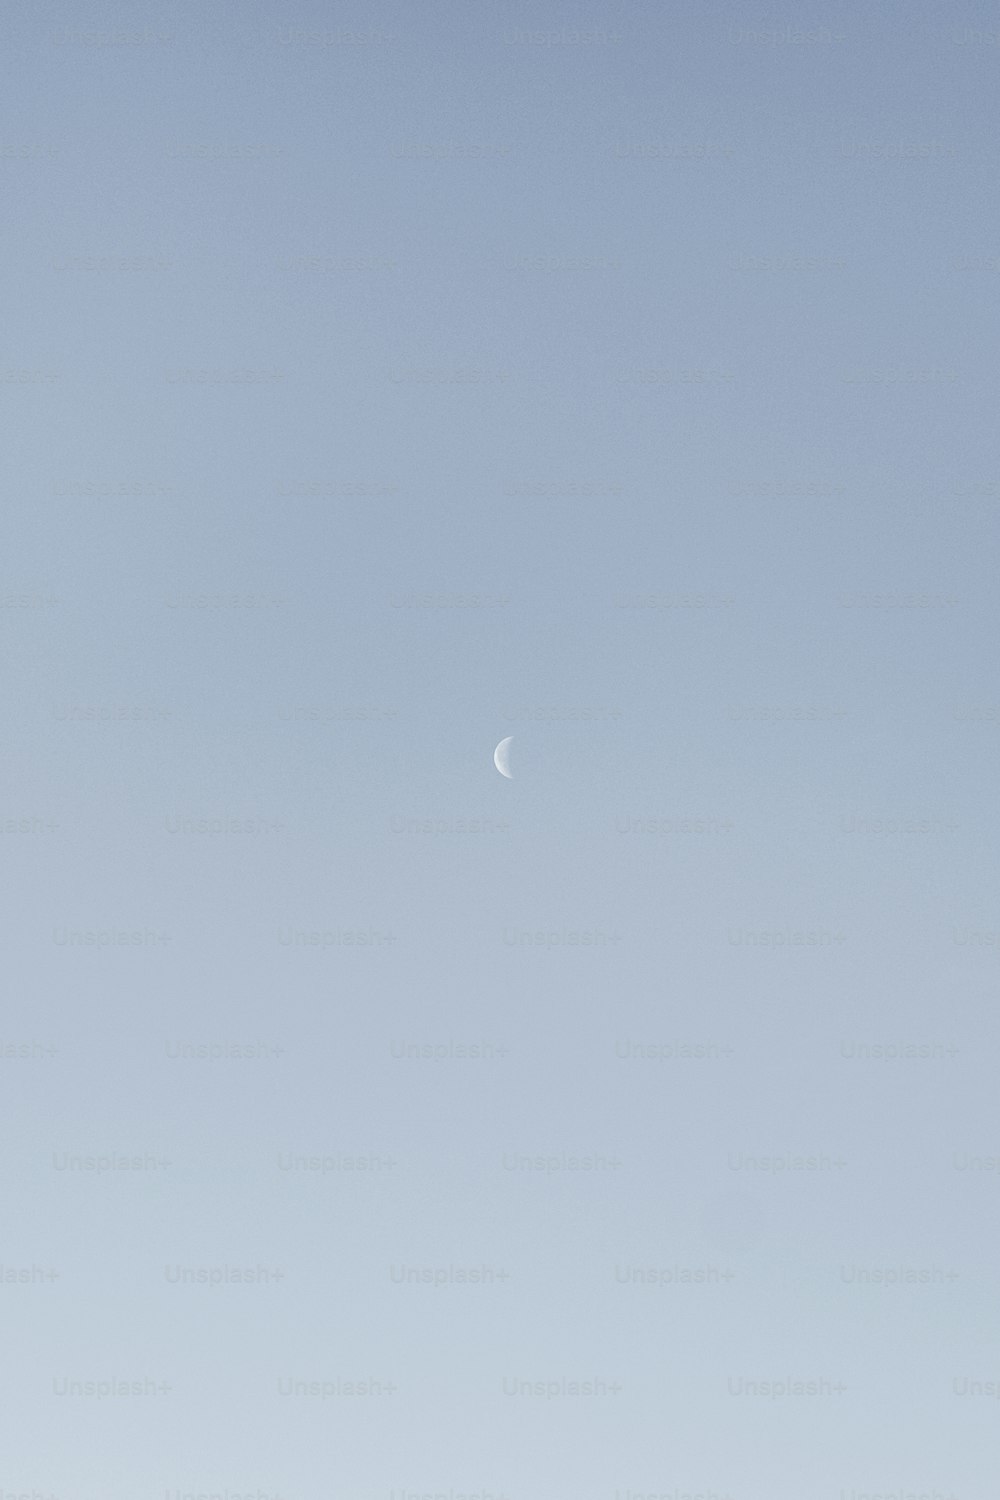 um avião voando no céu com uma meia lua à distância